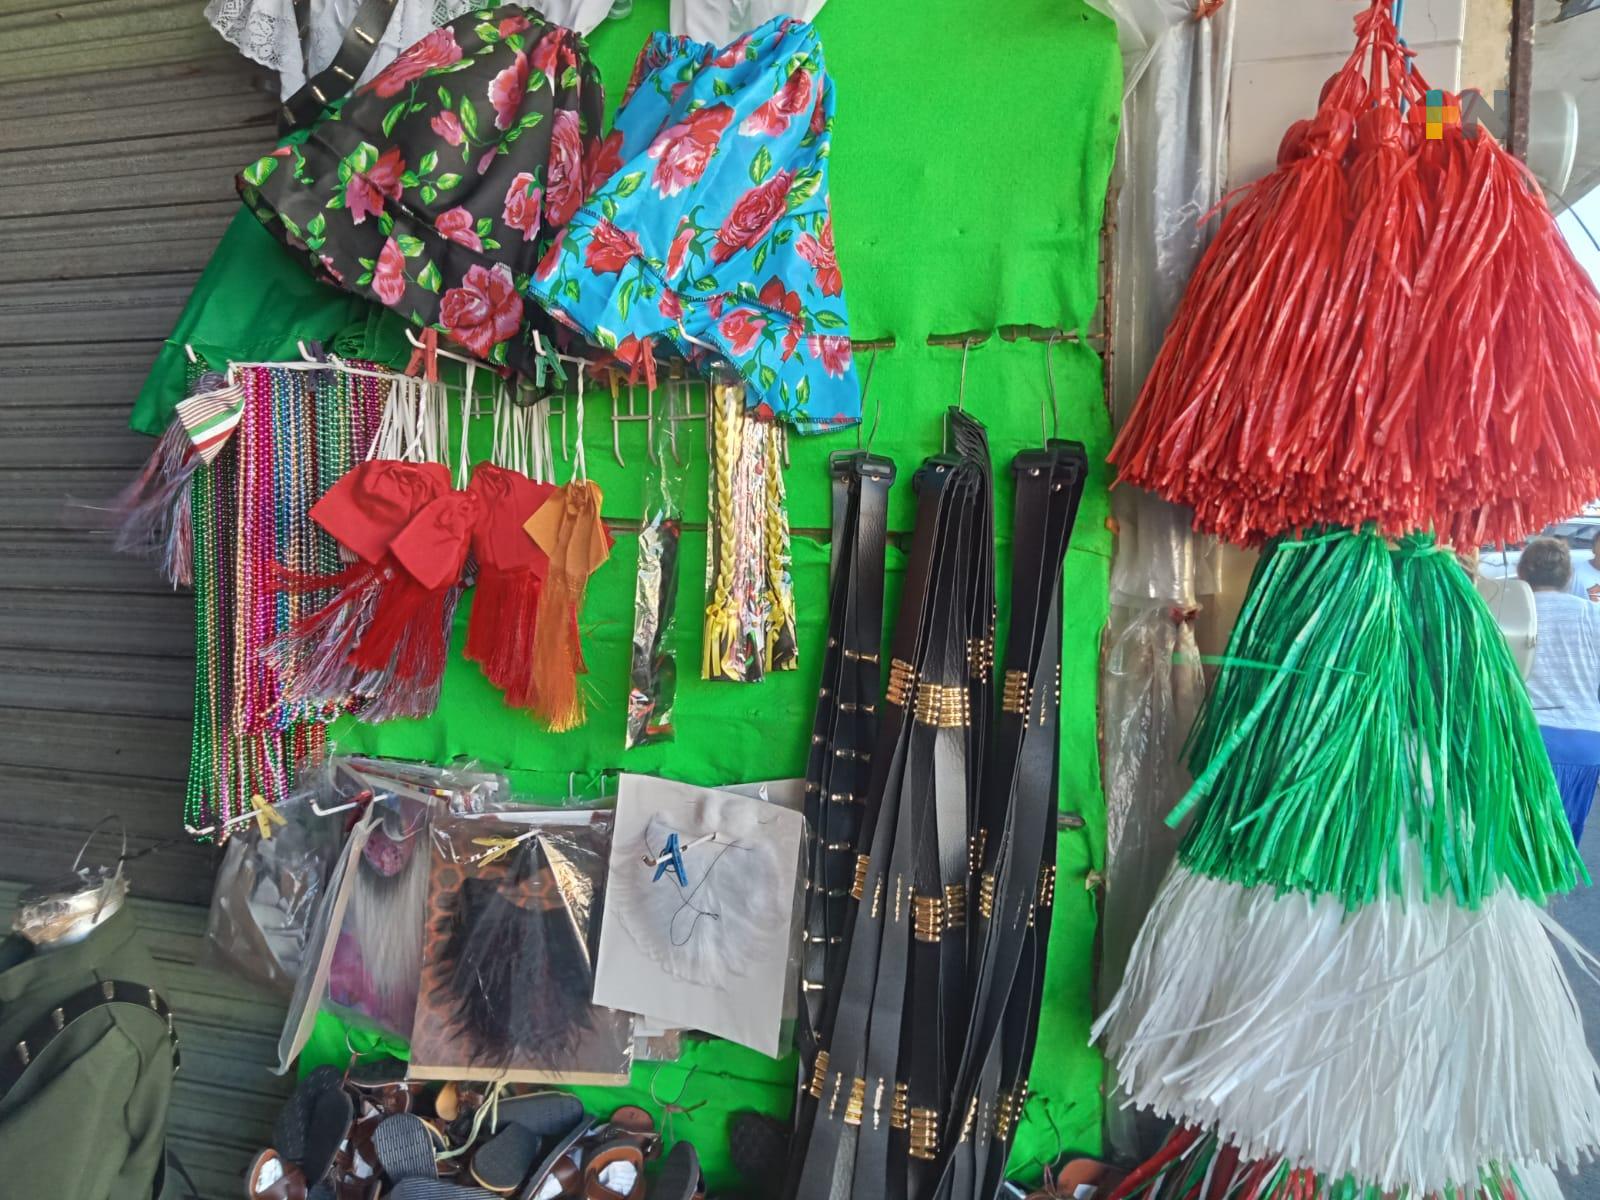 Comerciantes esperan altas ventas en disfraces y uniformes por Día de la Revolución Mexicana